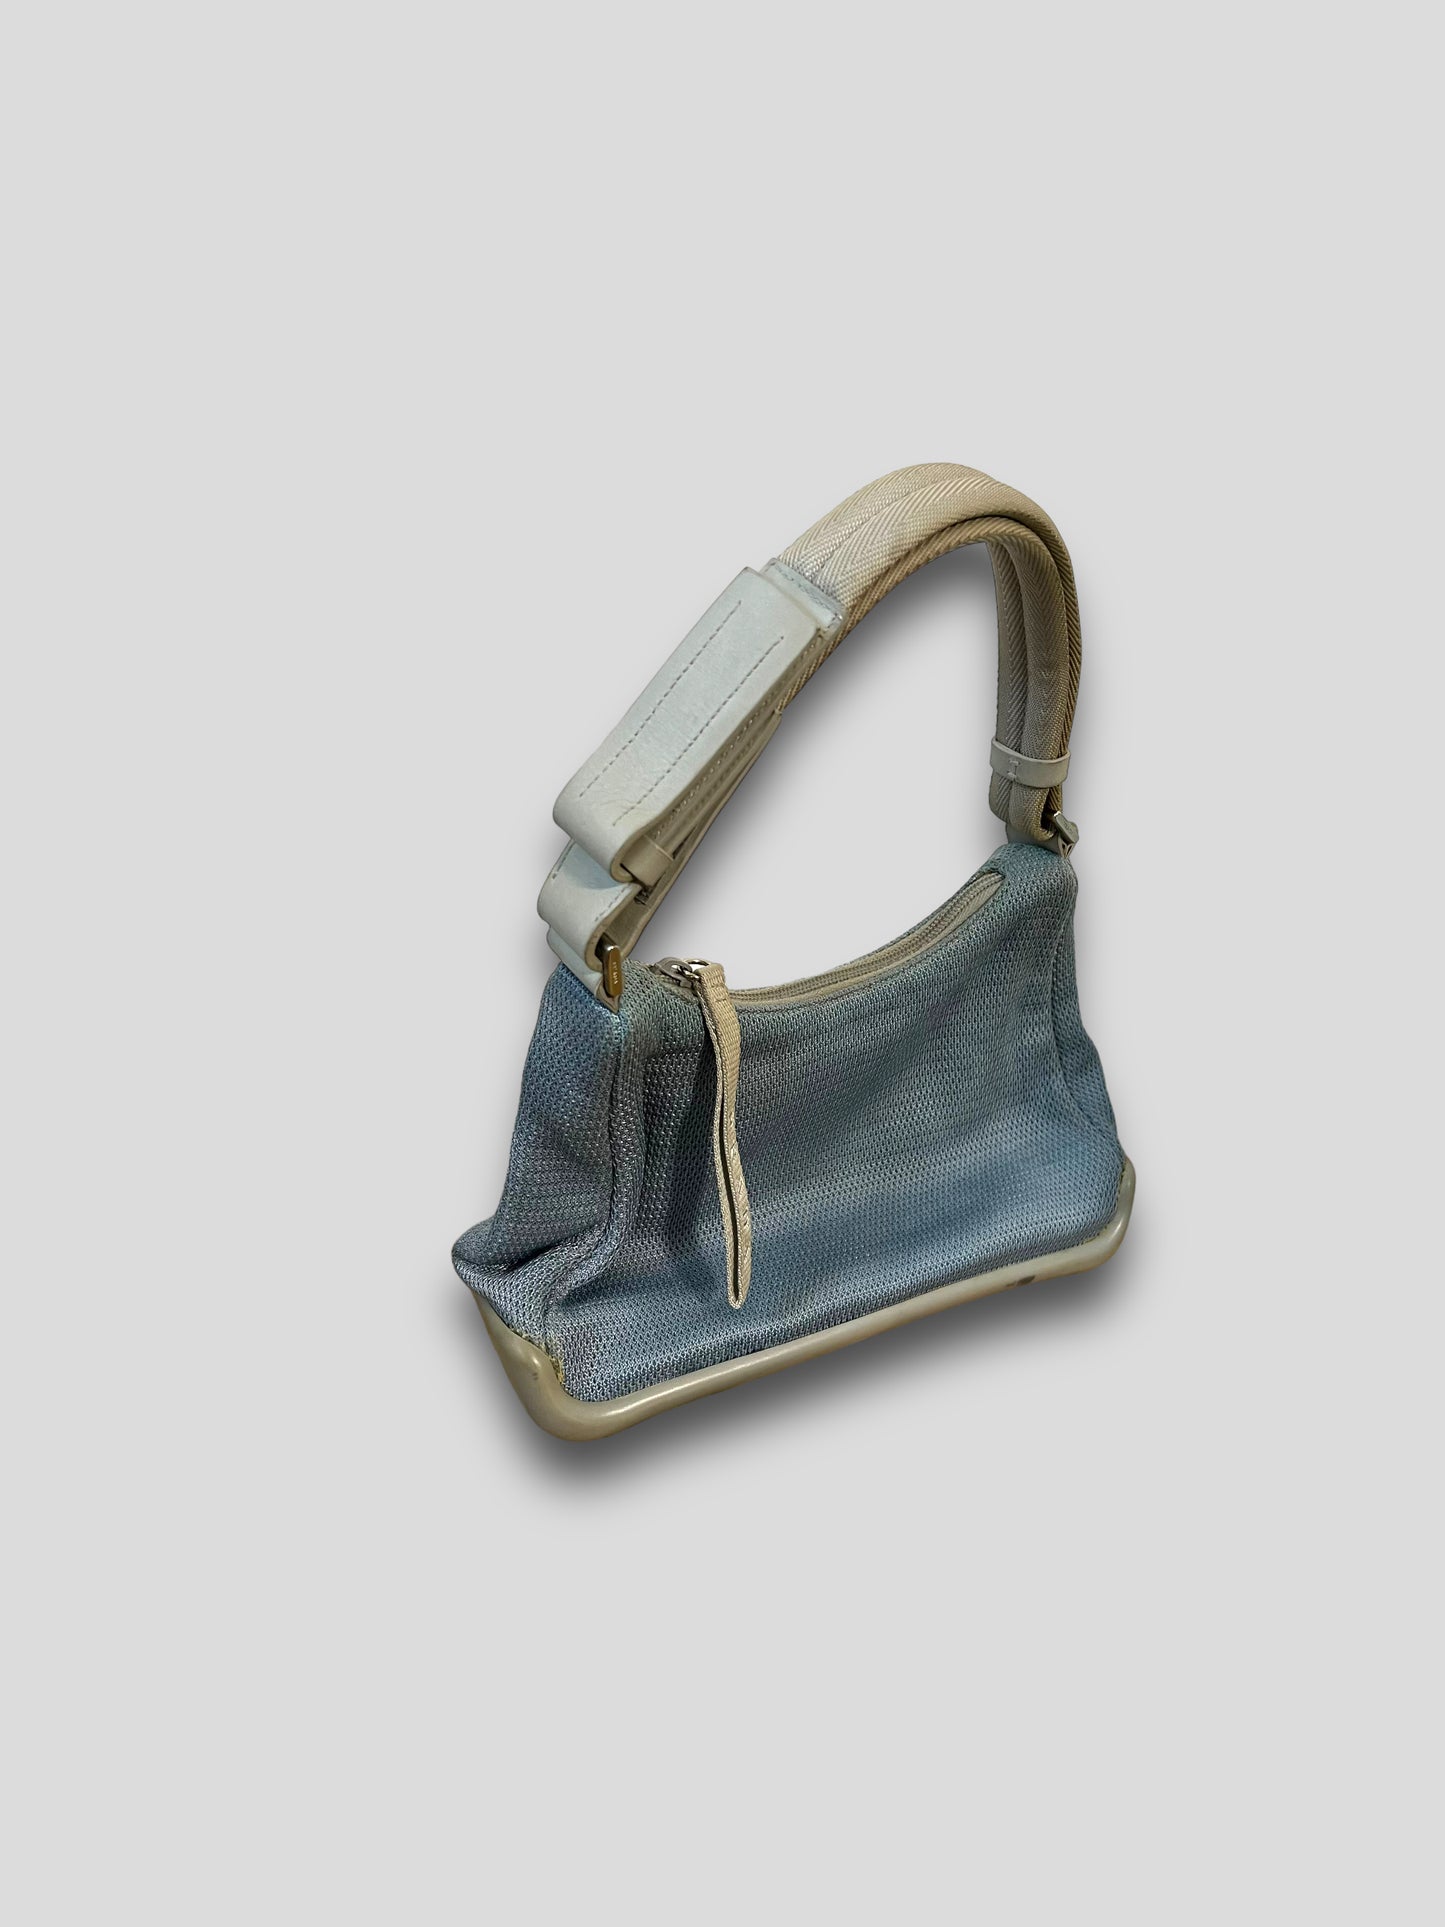 90’s Prada blue shoulder bag